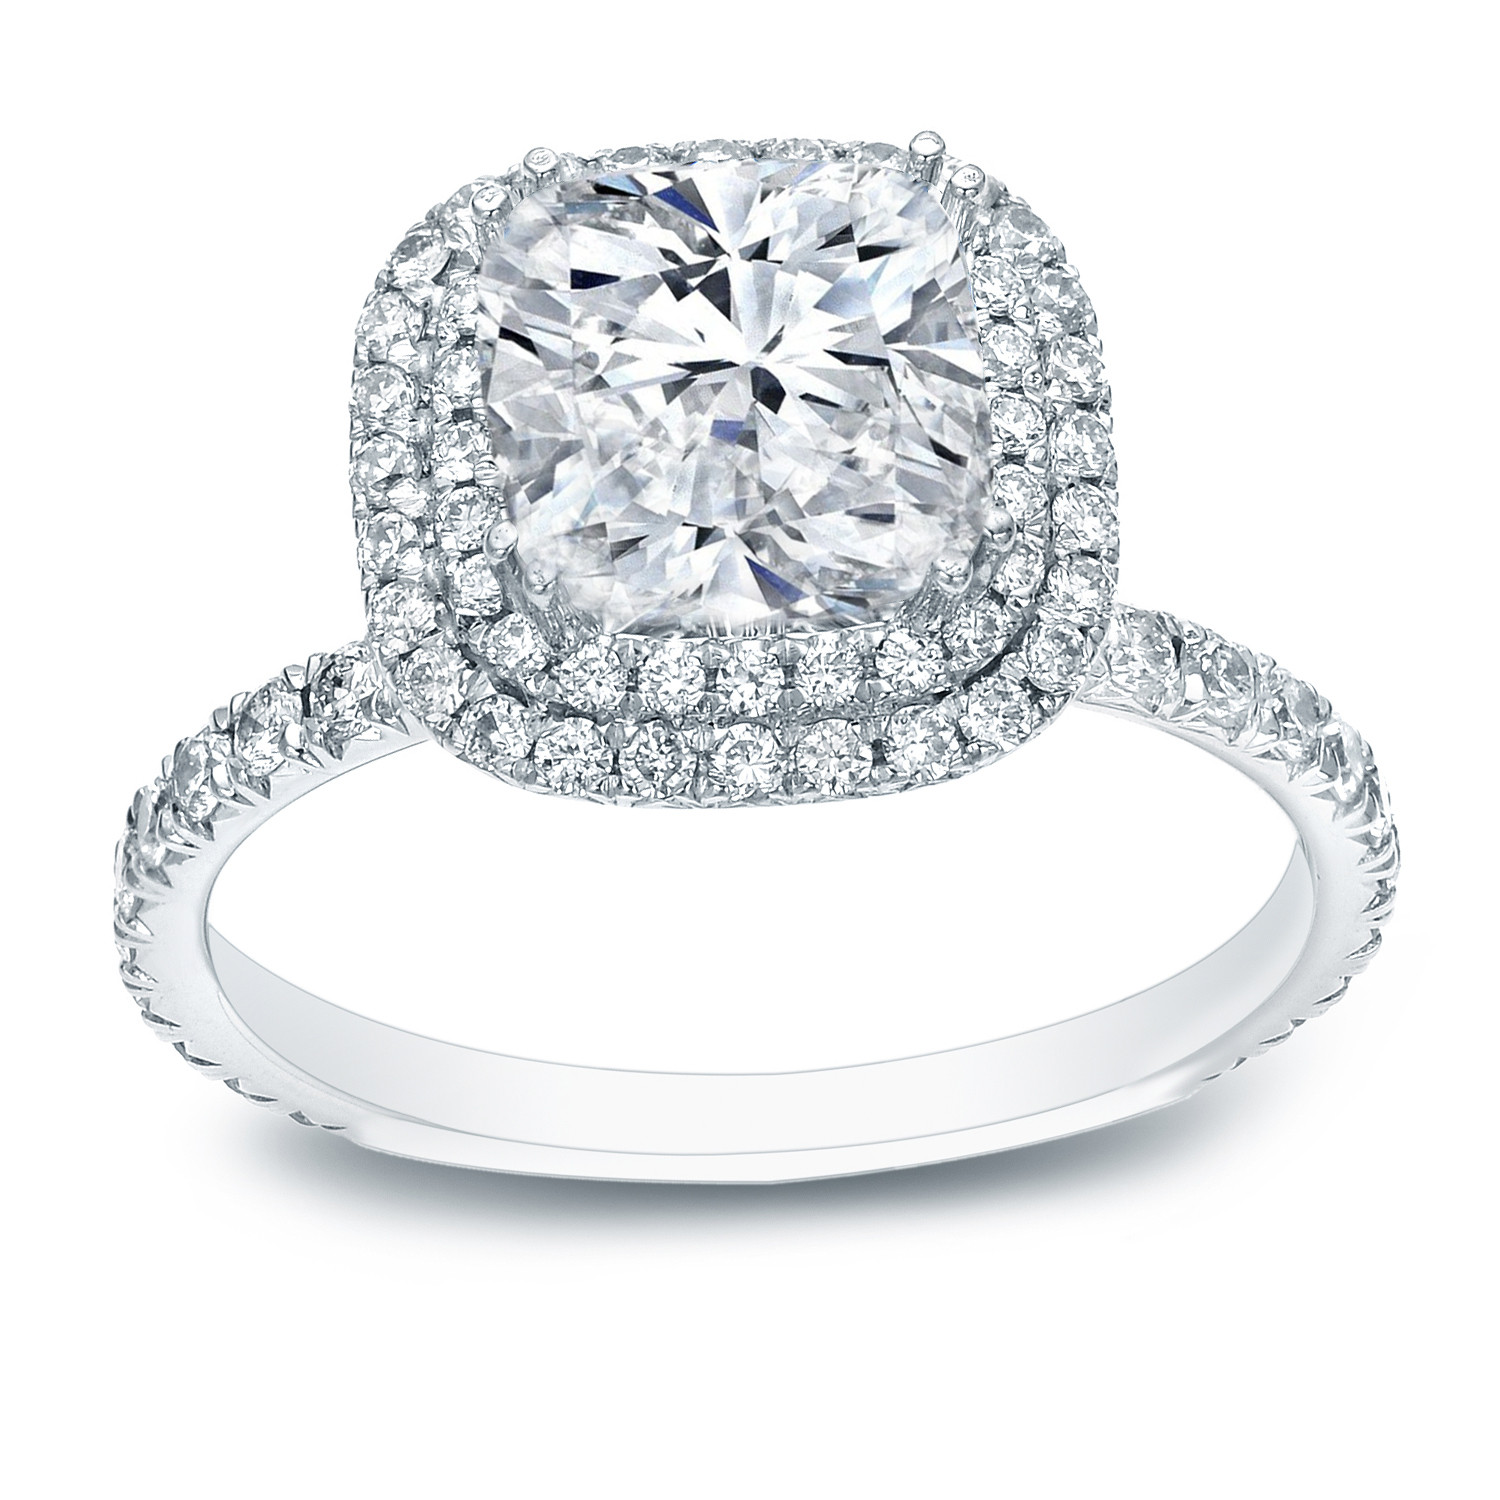 Diamond Cushion Cut Engagement Rings
 Cushion Cut Diamond Double Halo Engagement Ring In 14k